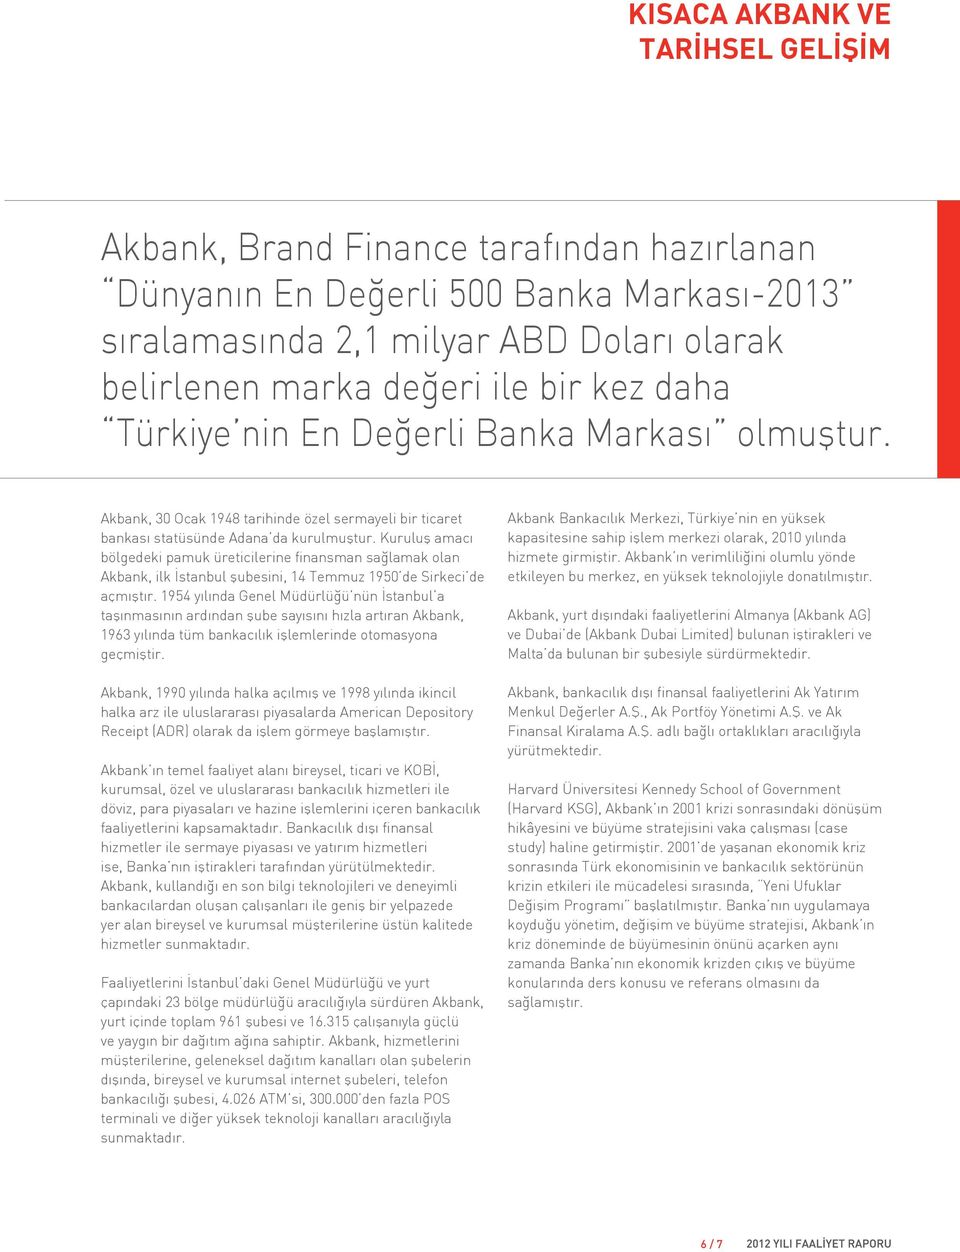 Kuruluş amacı bölgedeki pamuk üreticilerine finansman sağlamak olan Akbank, ilk İstanbul şubesini, 14 Temmuz 1950 de Sirkeci de açmıştır.